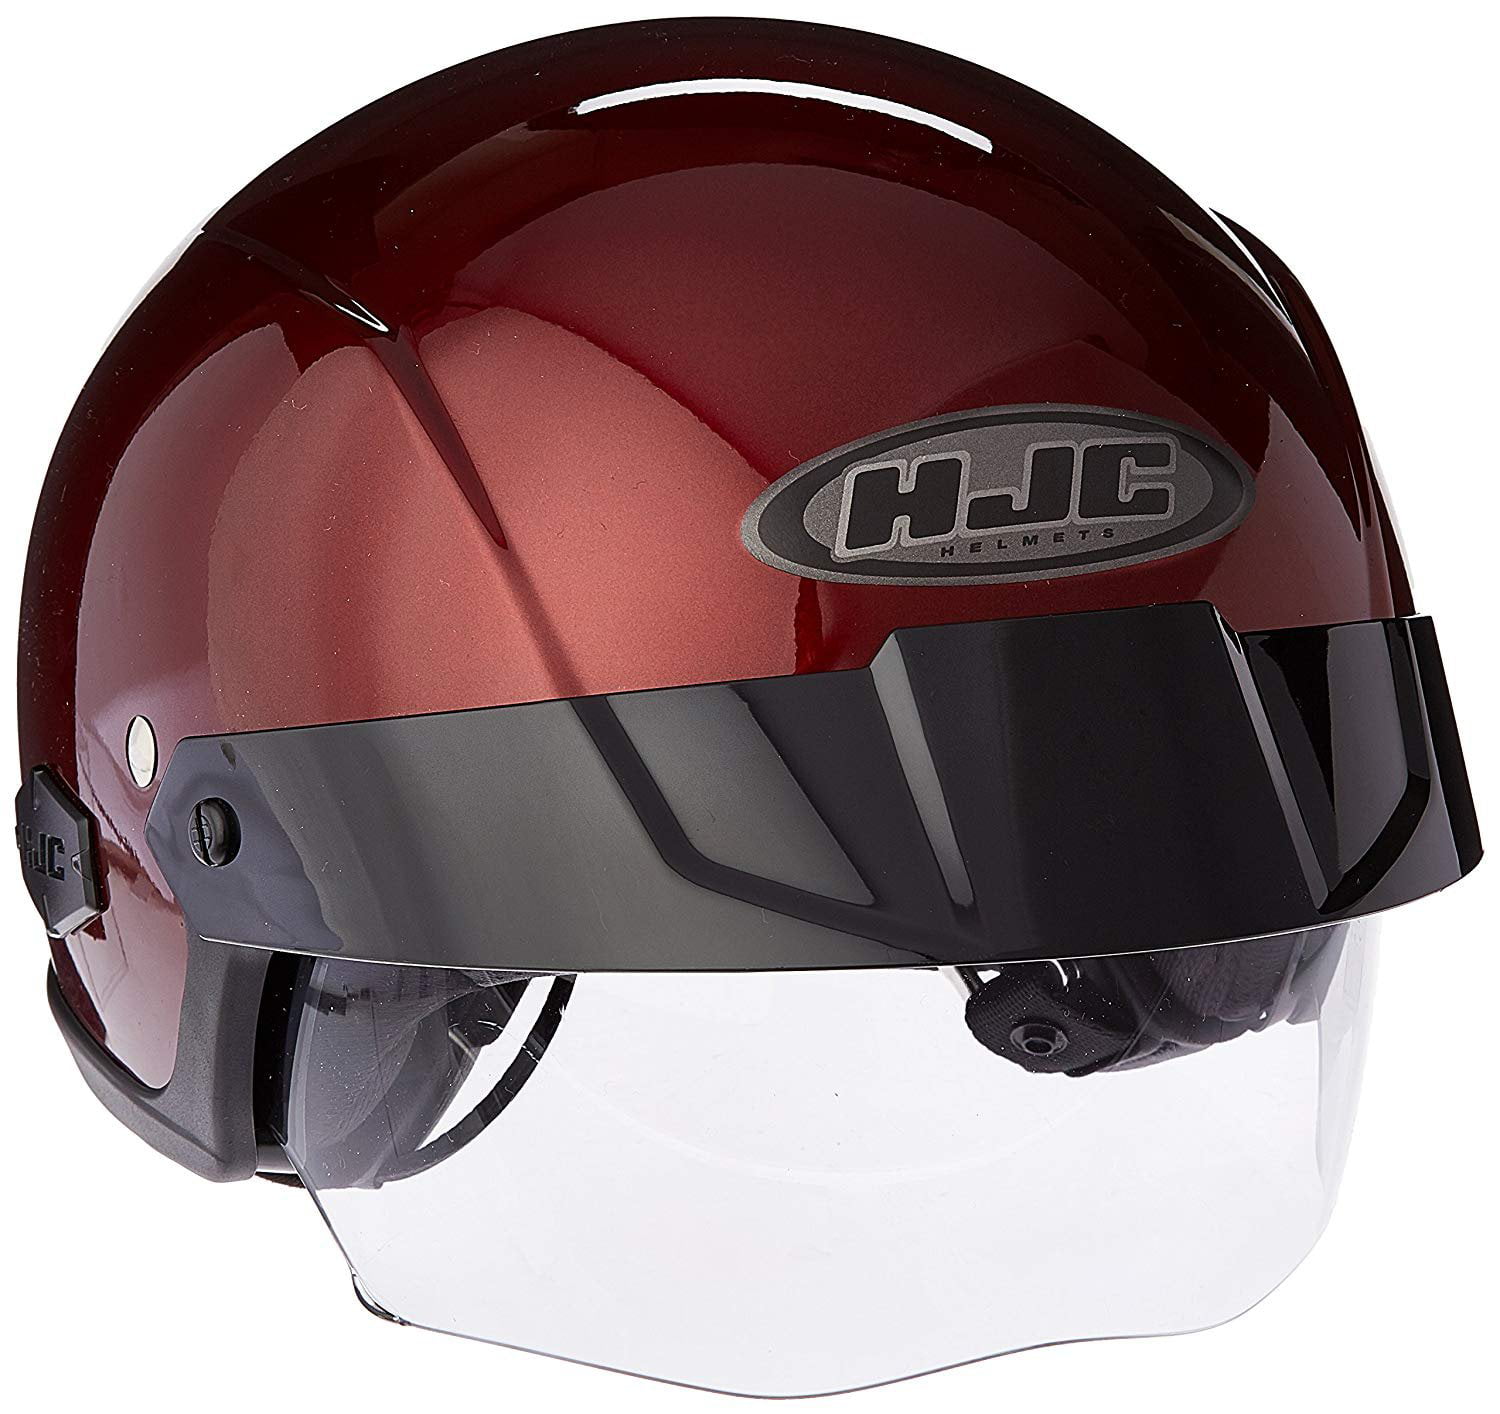 HJC IS-Cruiser Half-Shell Motorcycle Riding Helmet (Wine, Medium